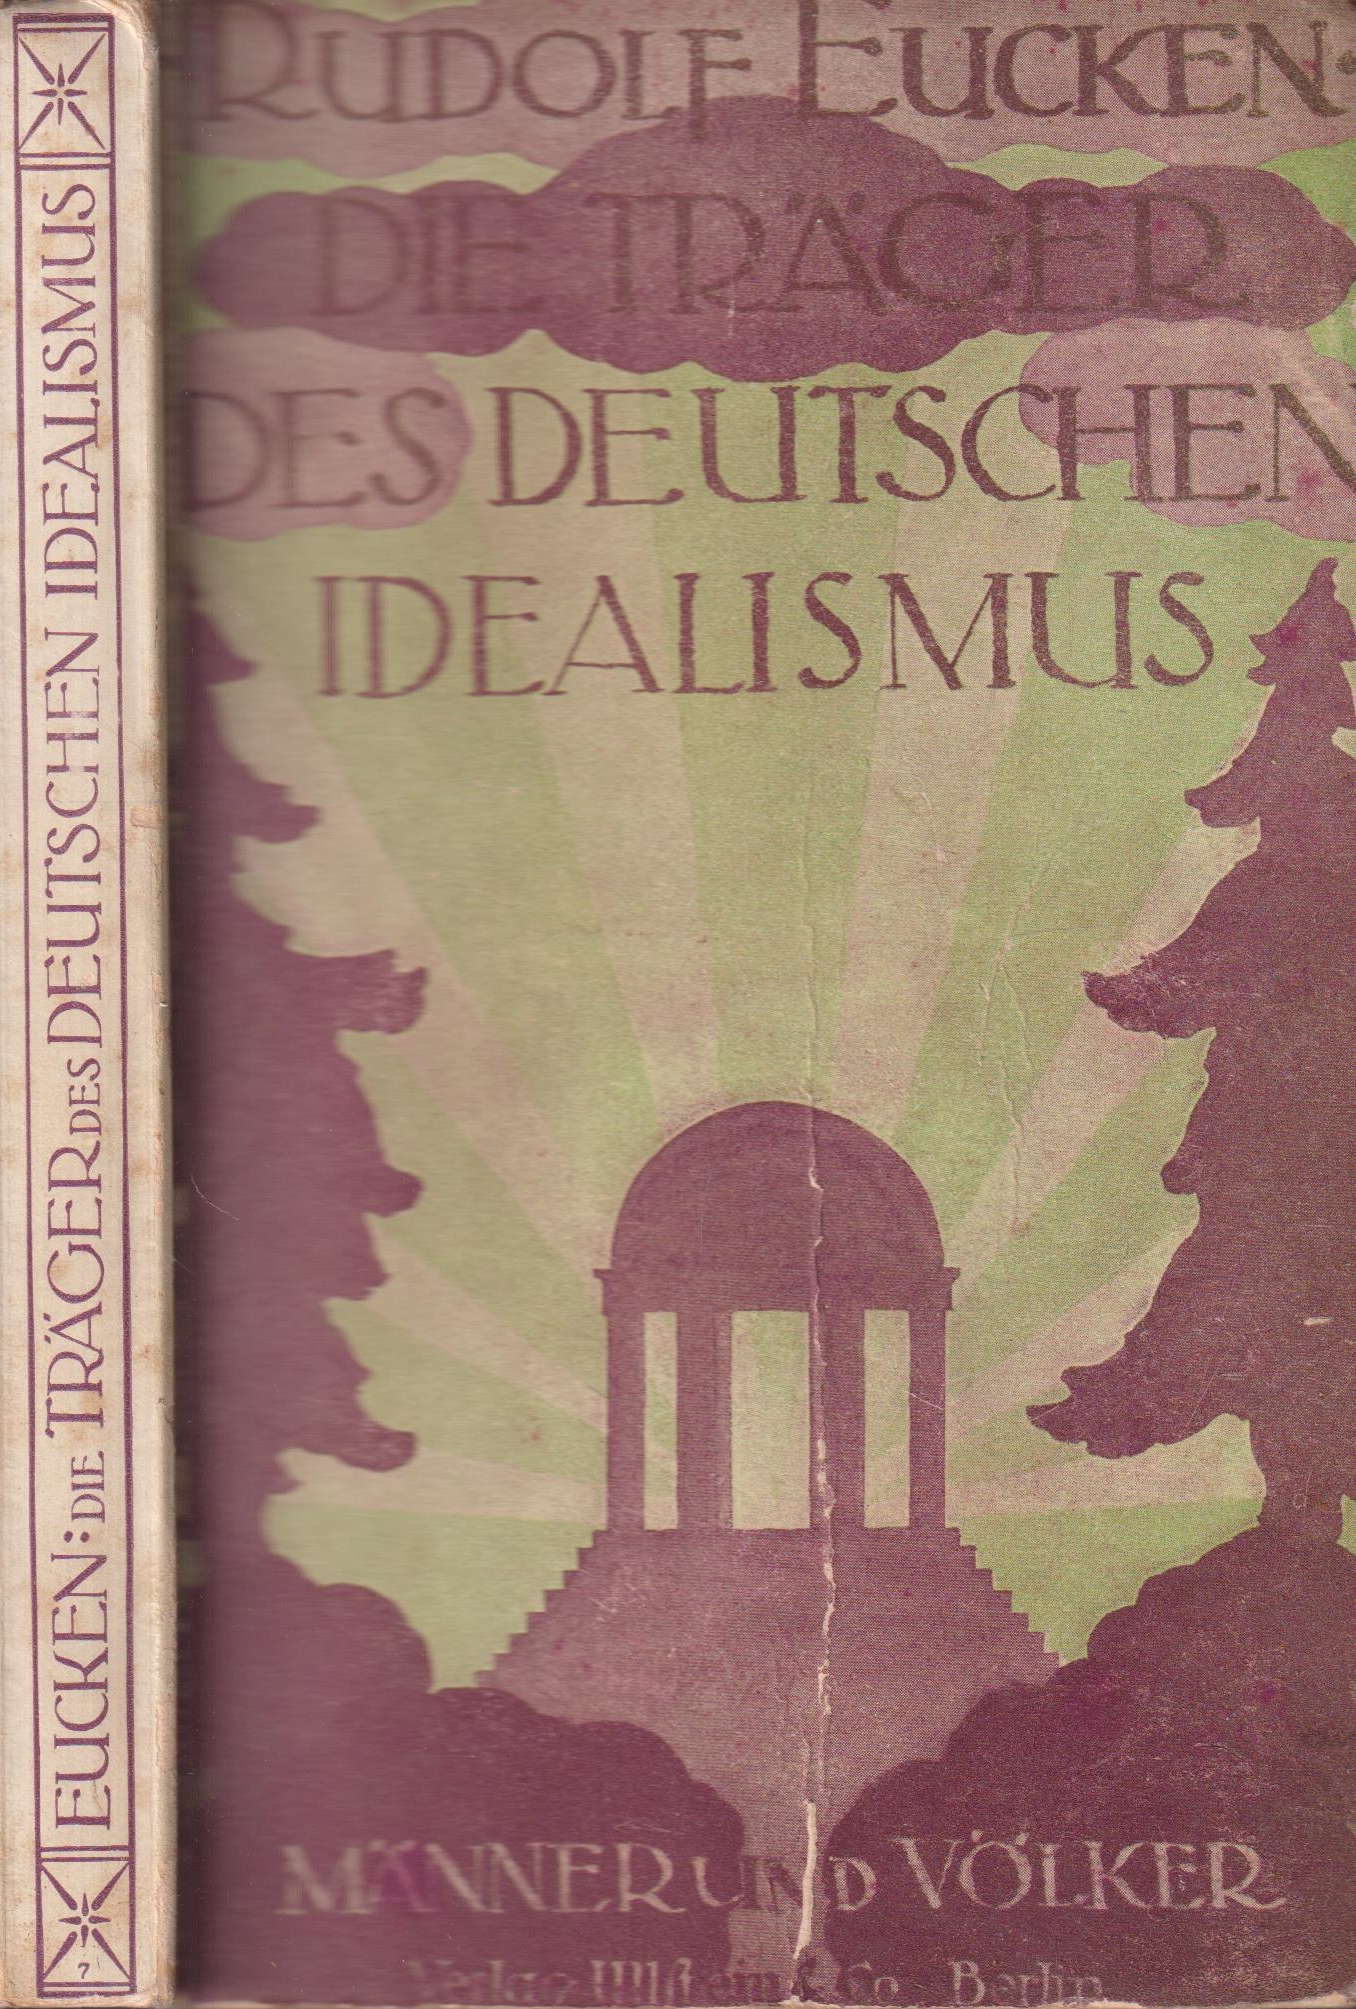 Die Träger des deutschen Idealismus - Eucken, Rudolf